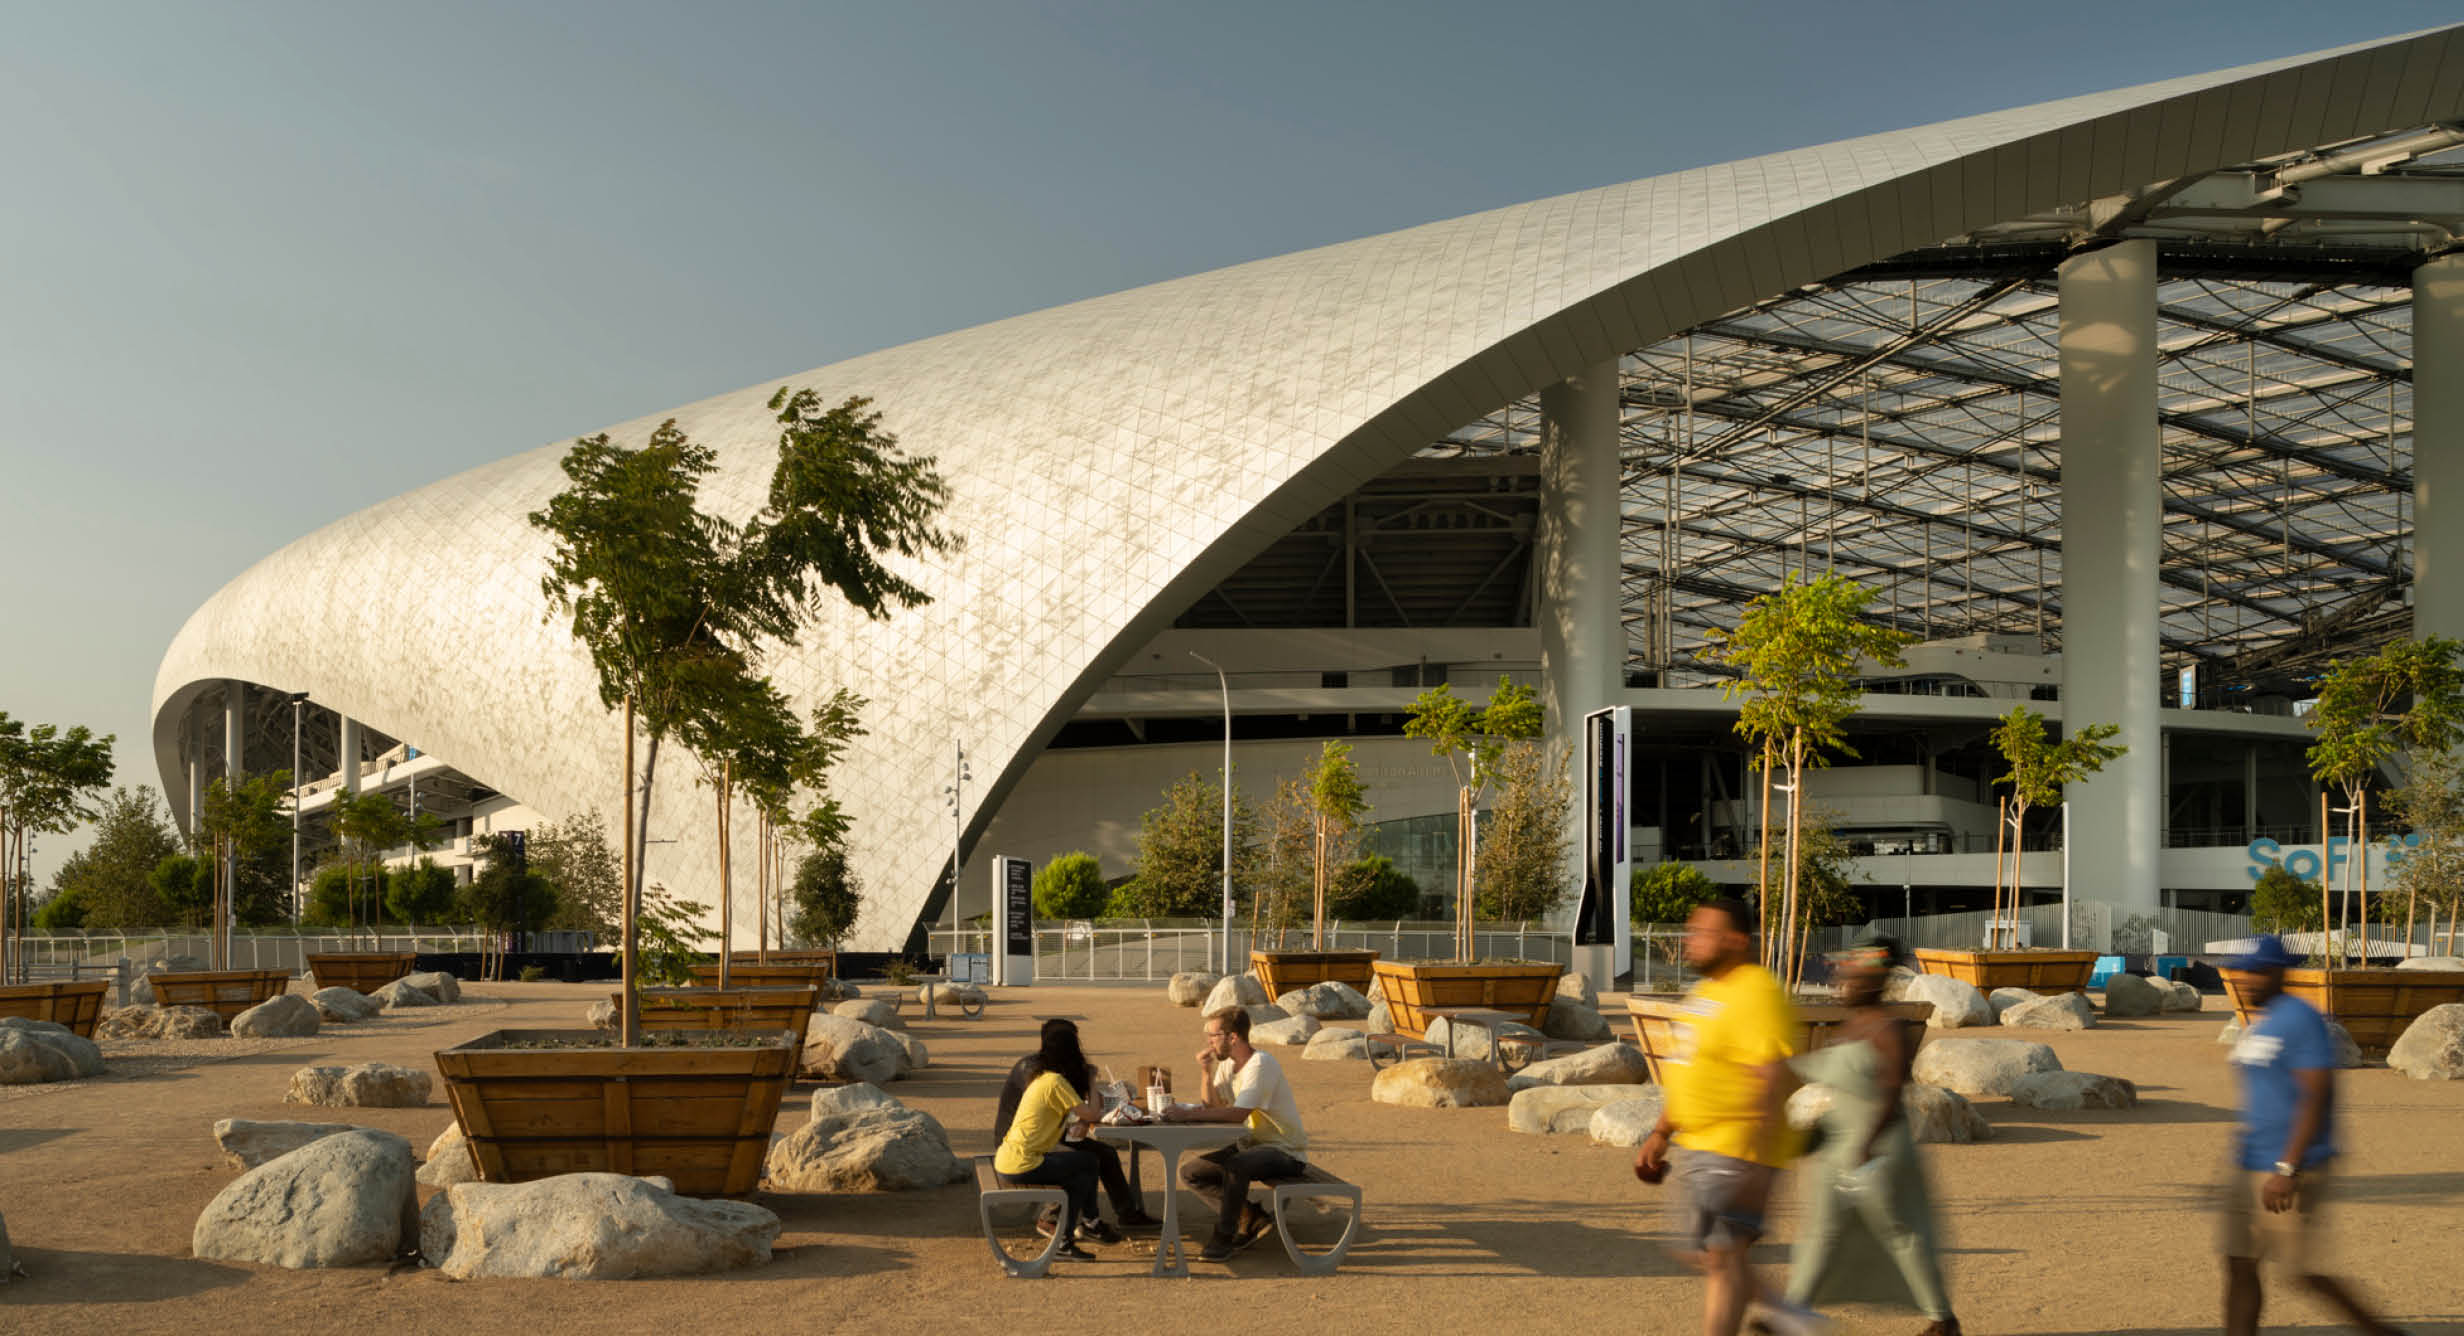 SoFi体育场获得了2021凡尔赛世界建筑与设计奖